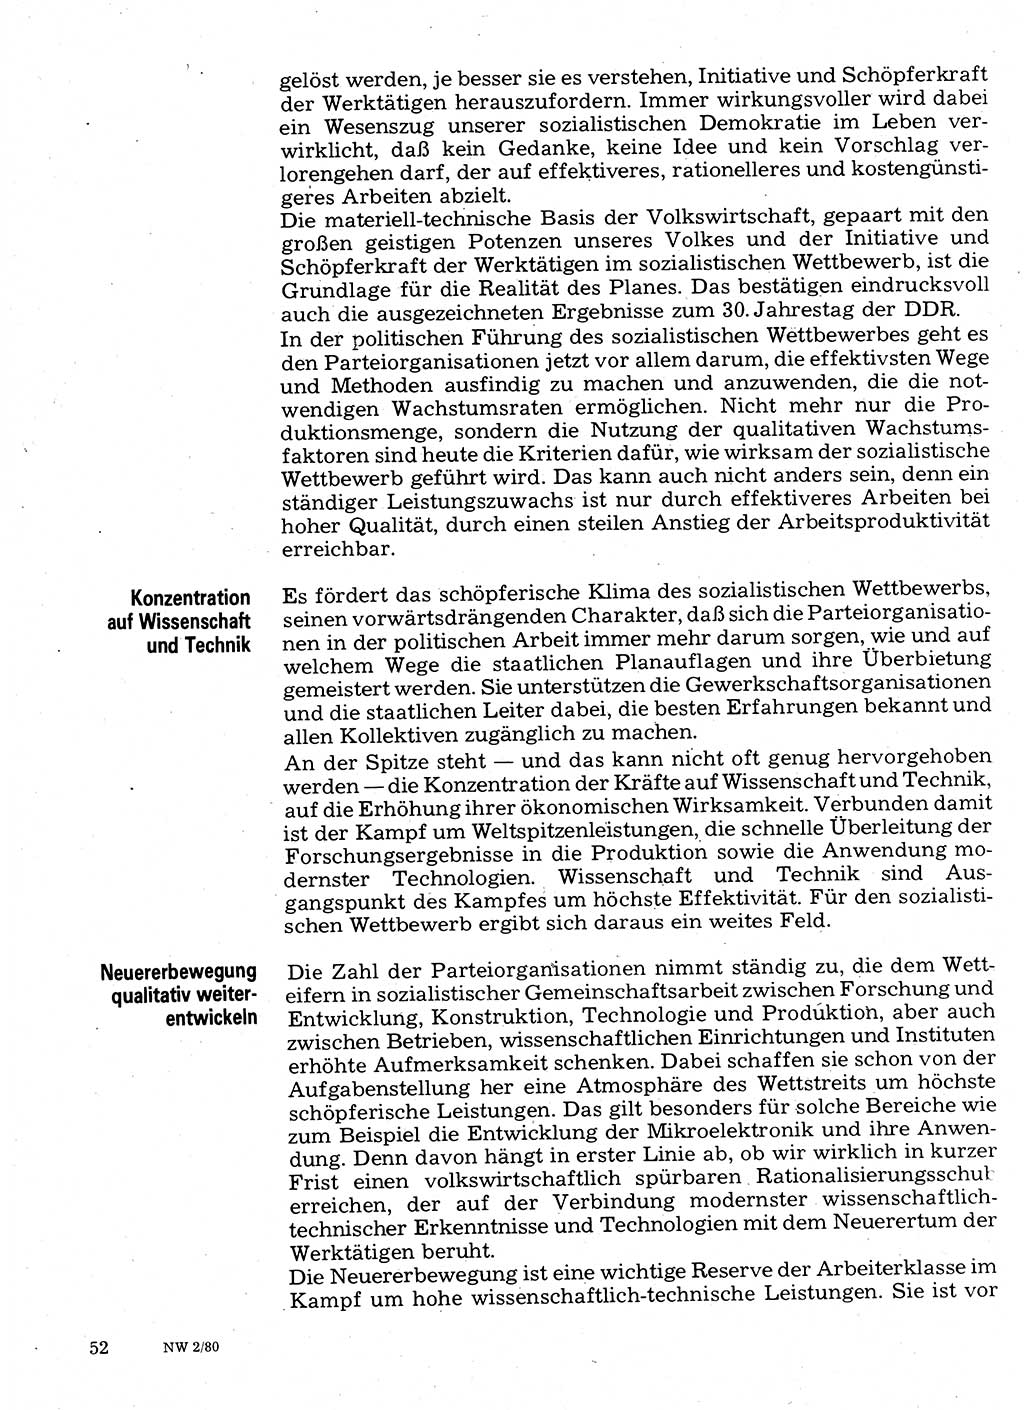 Neuer Weg (NW), Organ des Zentralkomitees (ZK) der SED (Sozialistische Einheitspartei Deutschlands) für Fragen des Parteilebens, 35. Jahrgang [Deutsche Demokratische Republik (DDR)] 1980, Seite 52 (NW ZK SED DDR 1980, S. 52)